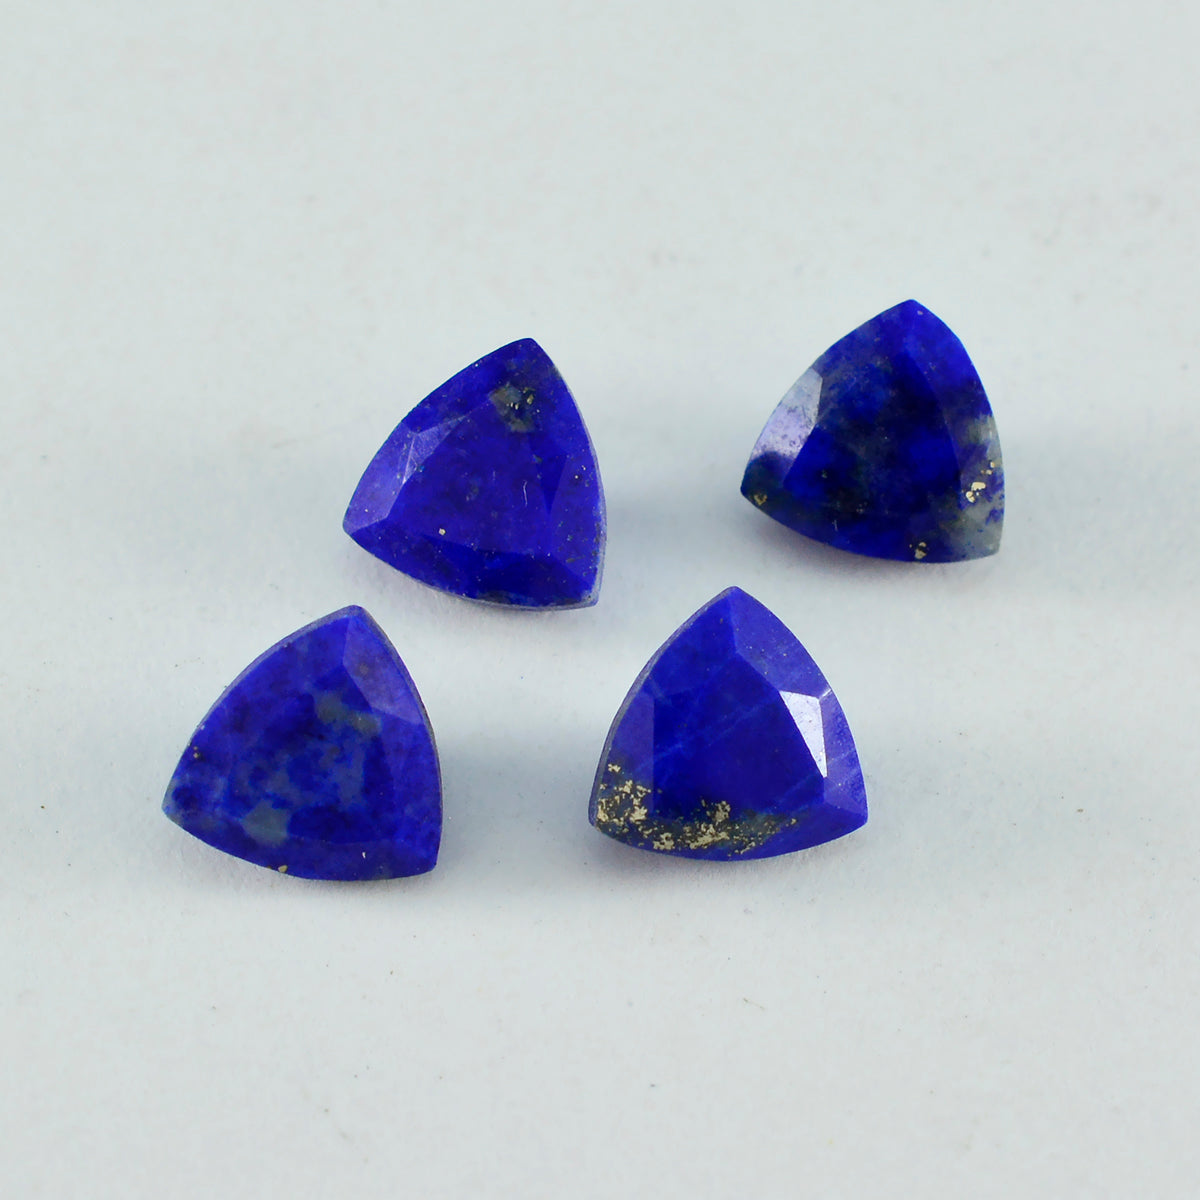 Riyogems 1 Stück natürlicher blauer Lapislazuli, facettiert, 11 x 11 mm, Billionenform, Edelsteine in AA-Qualität